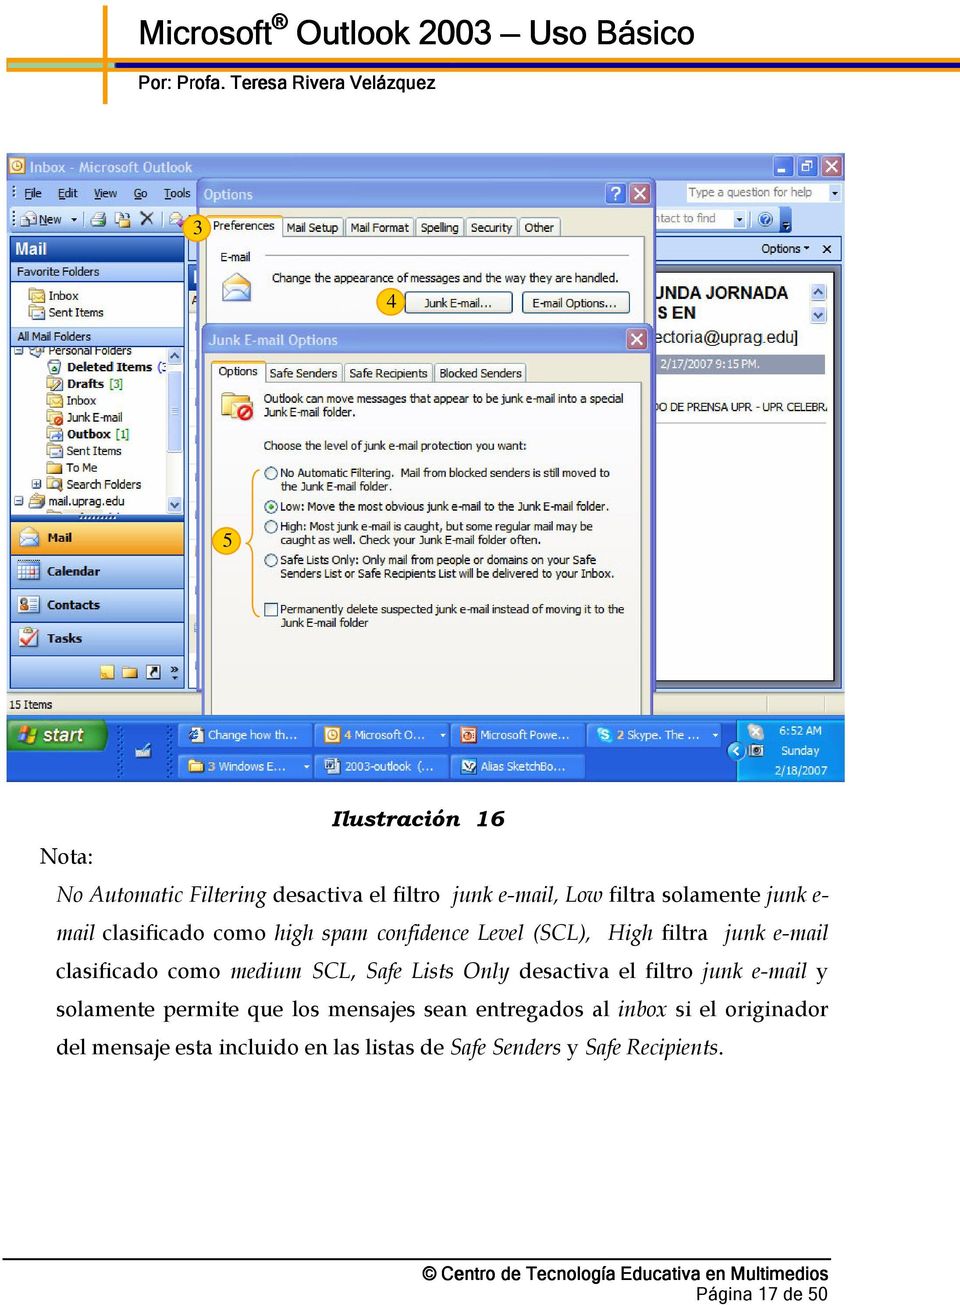 SCL, Safe Lists Only desactiva el filtro junk e-mail y solamente permite que los mensajes sean entregados al